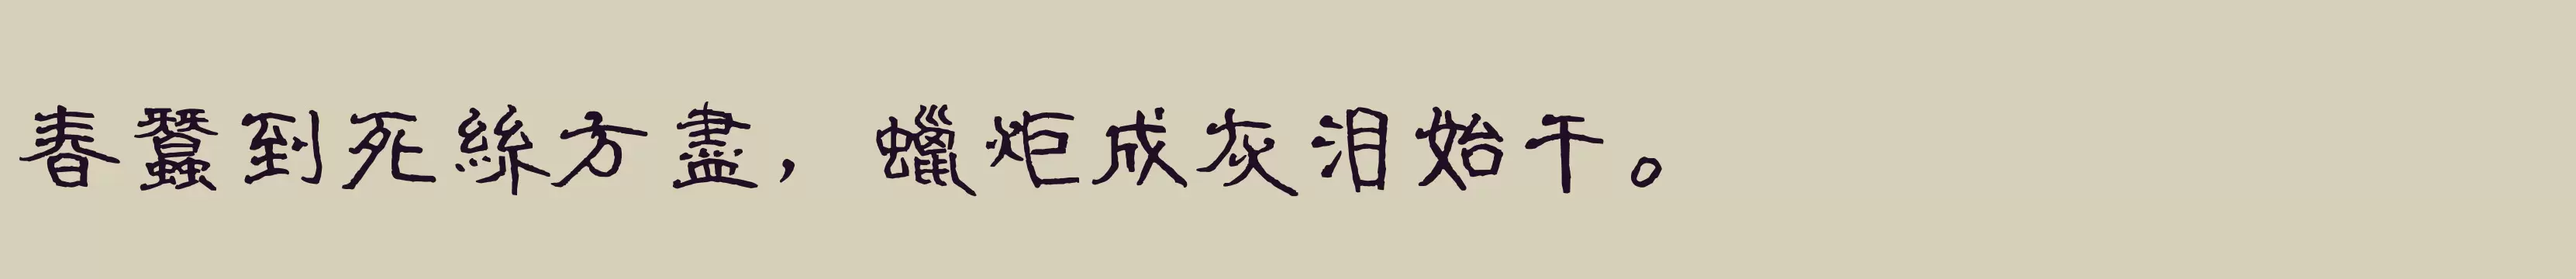 「腾祥铚谦隶书繁」字体效果图